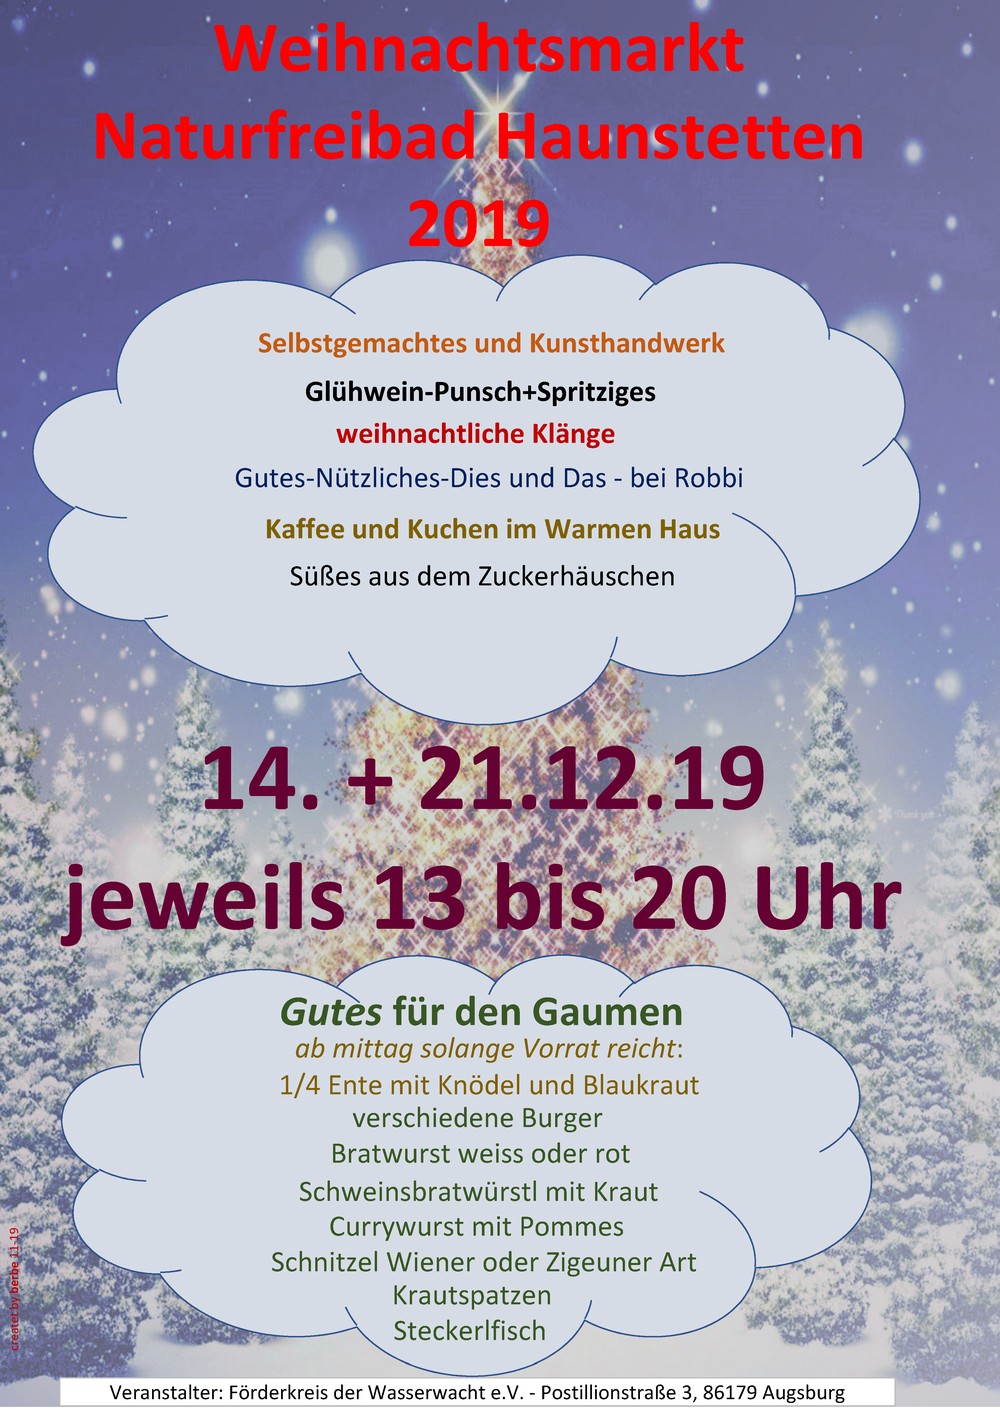 Weihnachtsmarkt im Naturfreibad Haunstetten 14. + 21. Dezember 2018